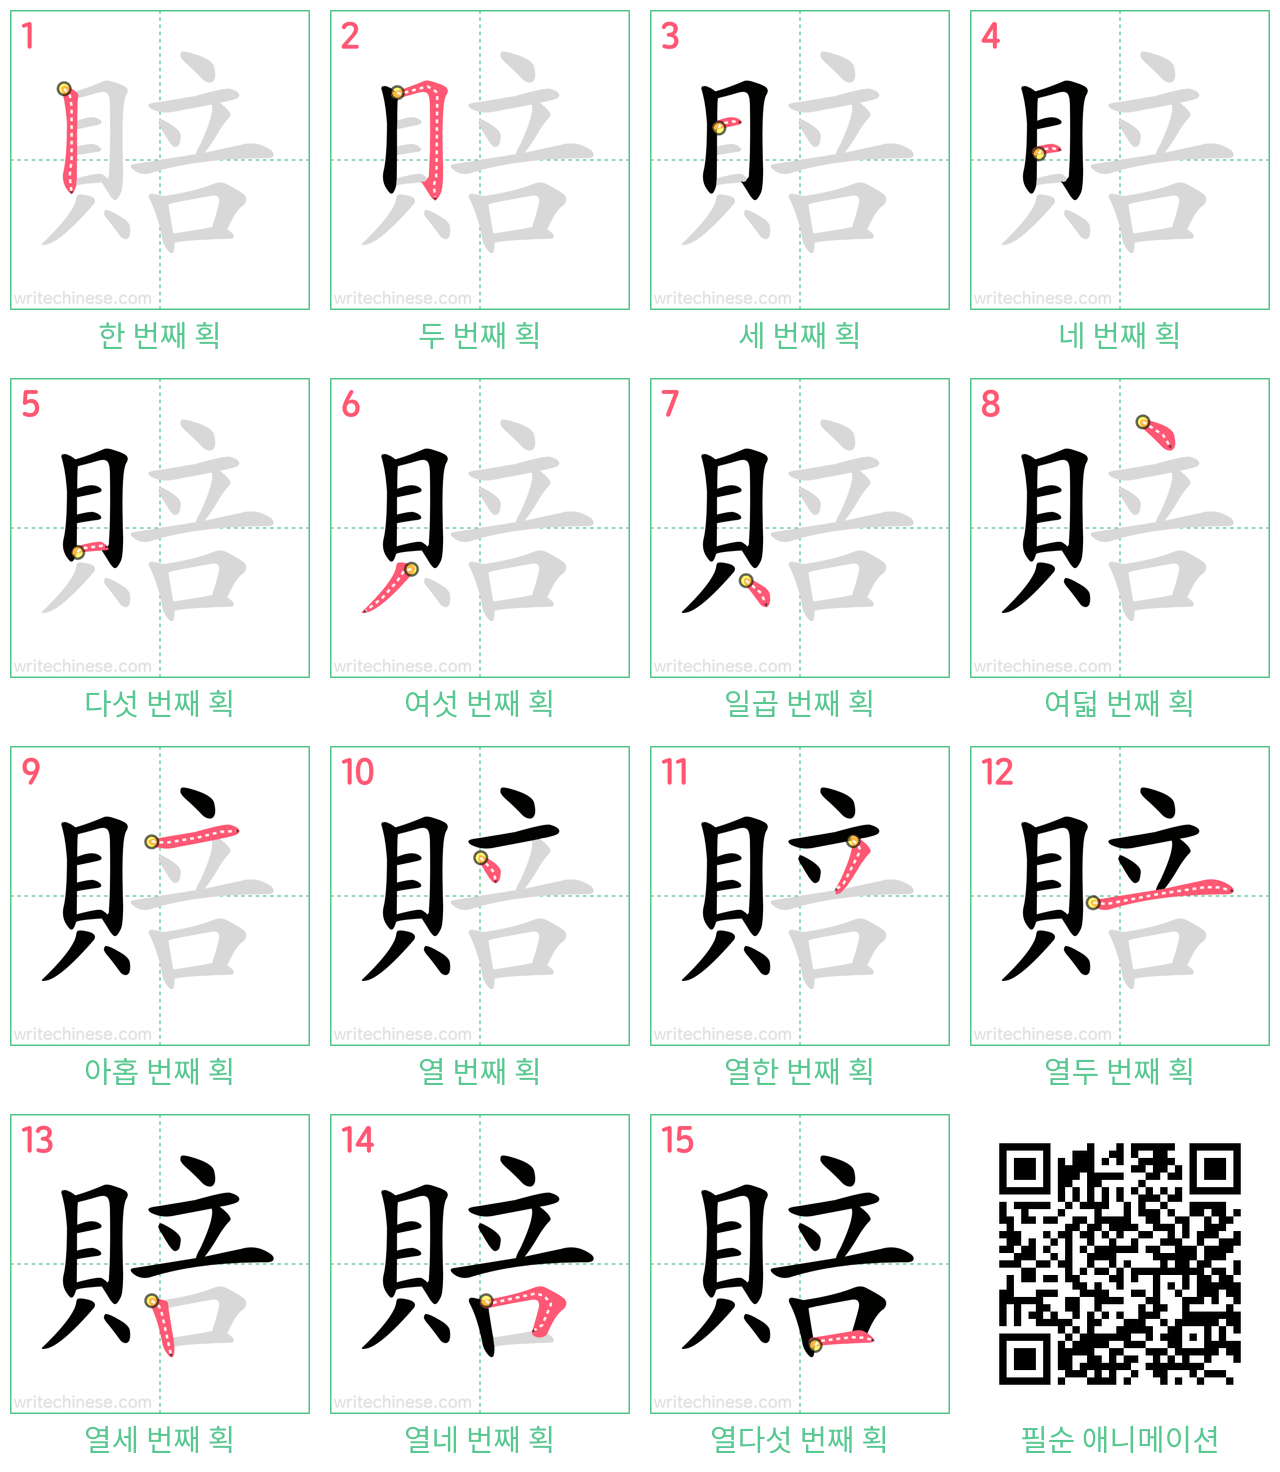 賠 step-by-step stroke order diagrams